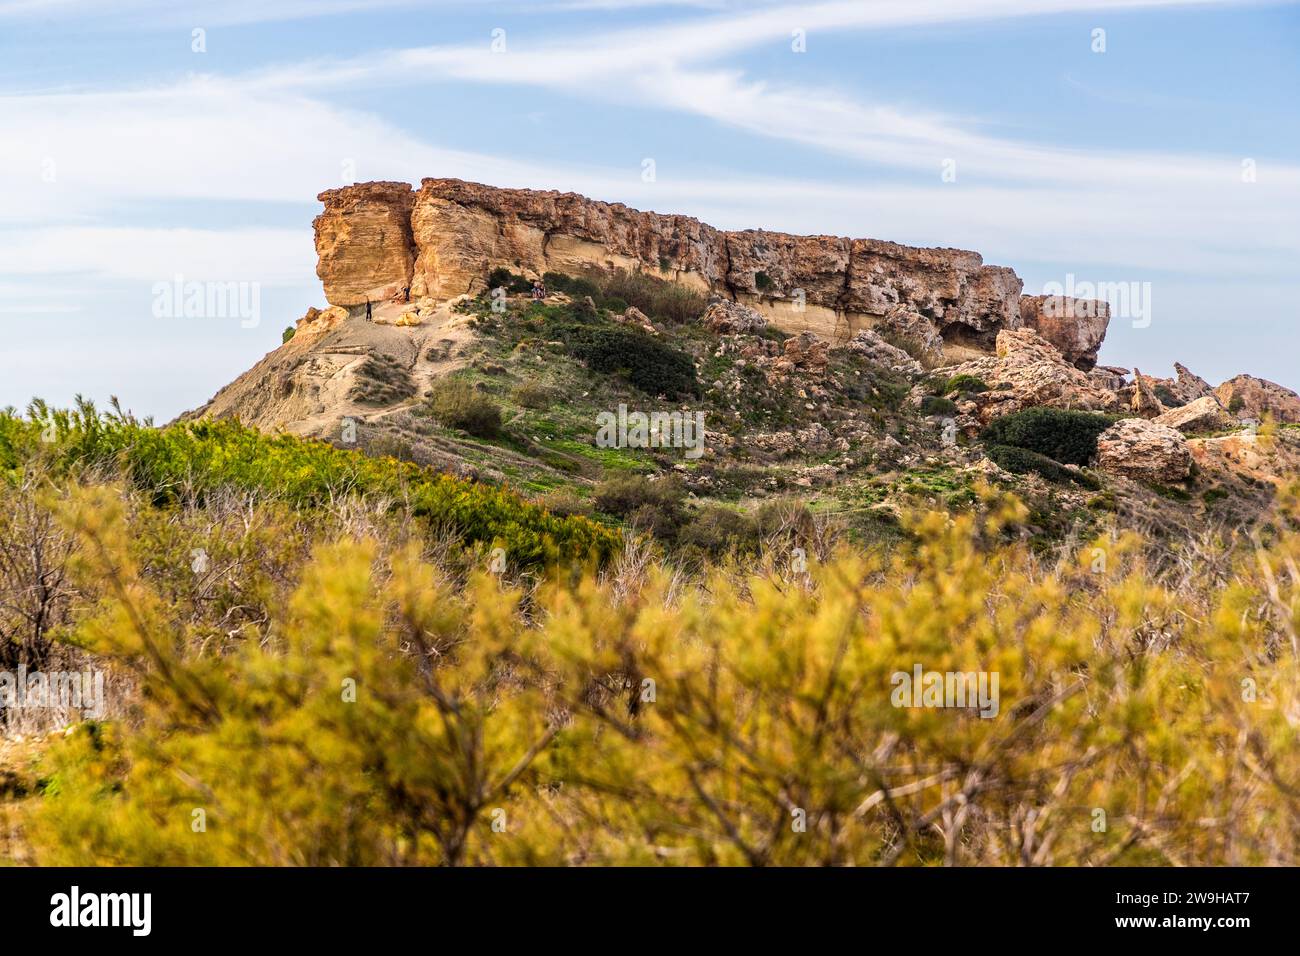 Għajn Tuffieħa-Bucht mit Il-Qarraba-Felsen. Strand mit dunklem Sand, beliebt zum Surfen und in einer Bucht, die von Hügeln umgeben ist, mit einem Küstenpfad in der Nähe von L-Imġarr, Malta Stockfoto